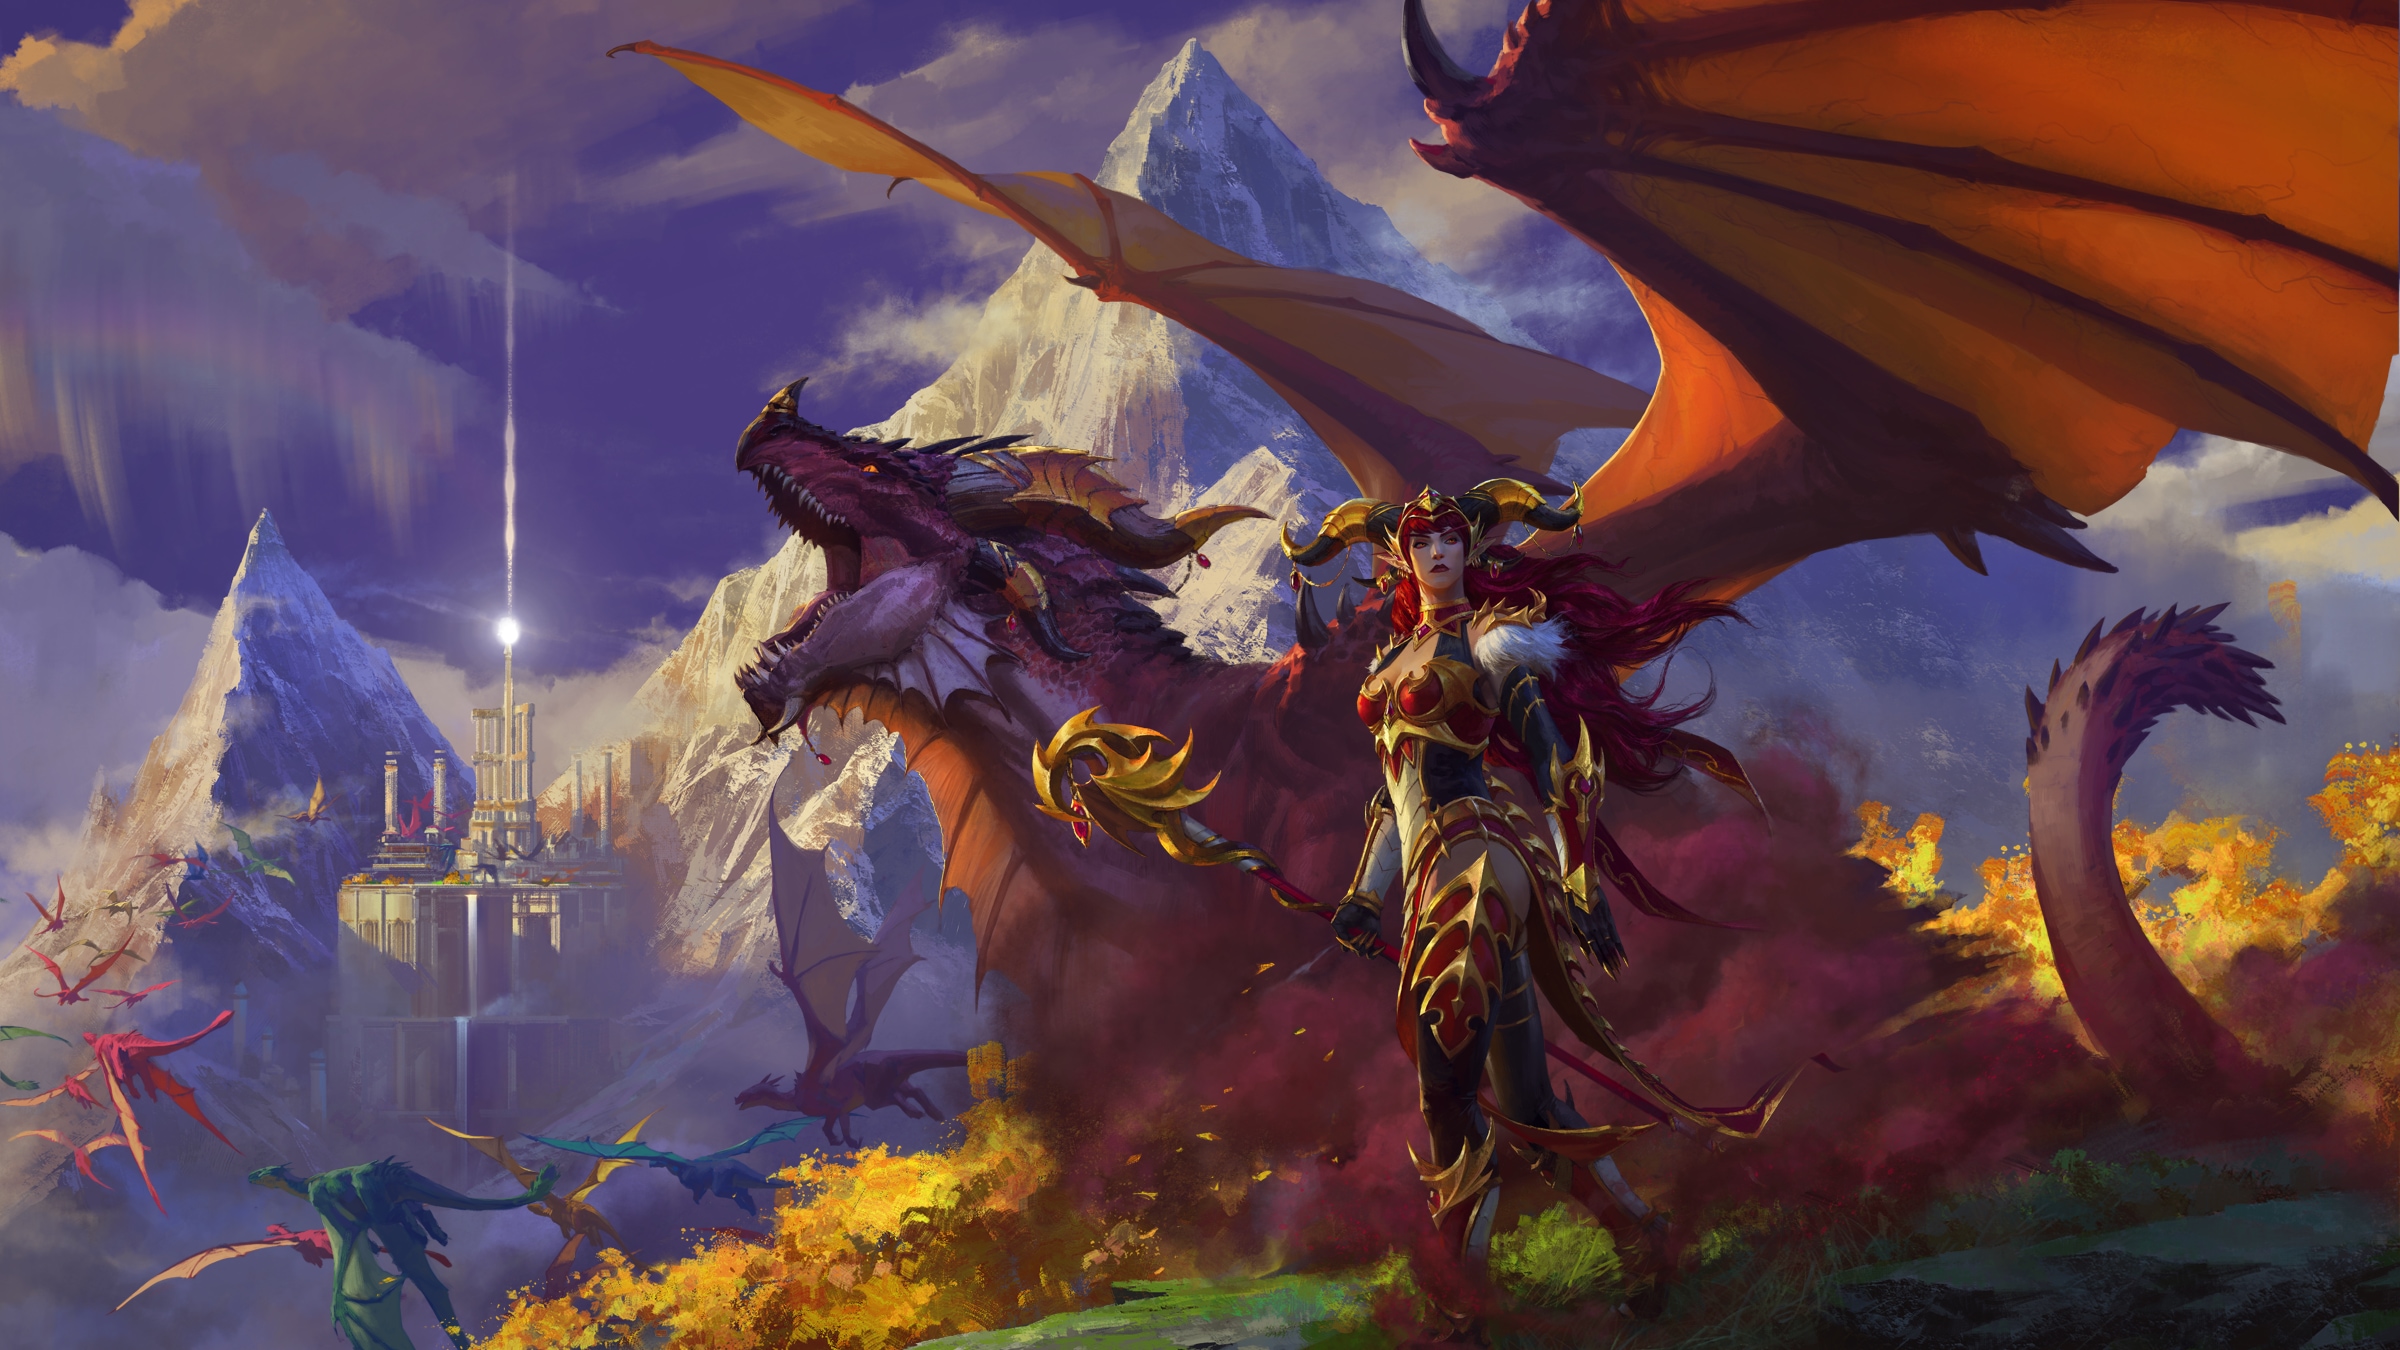 Сводка новостей об анонсах дополнений для World of Warcraft